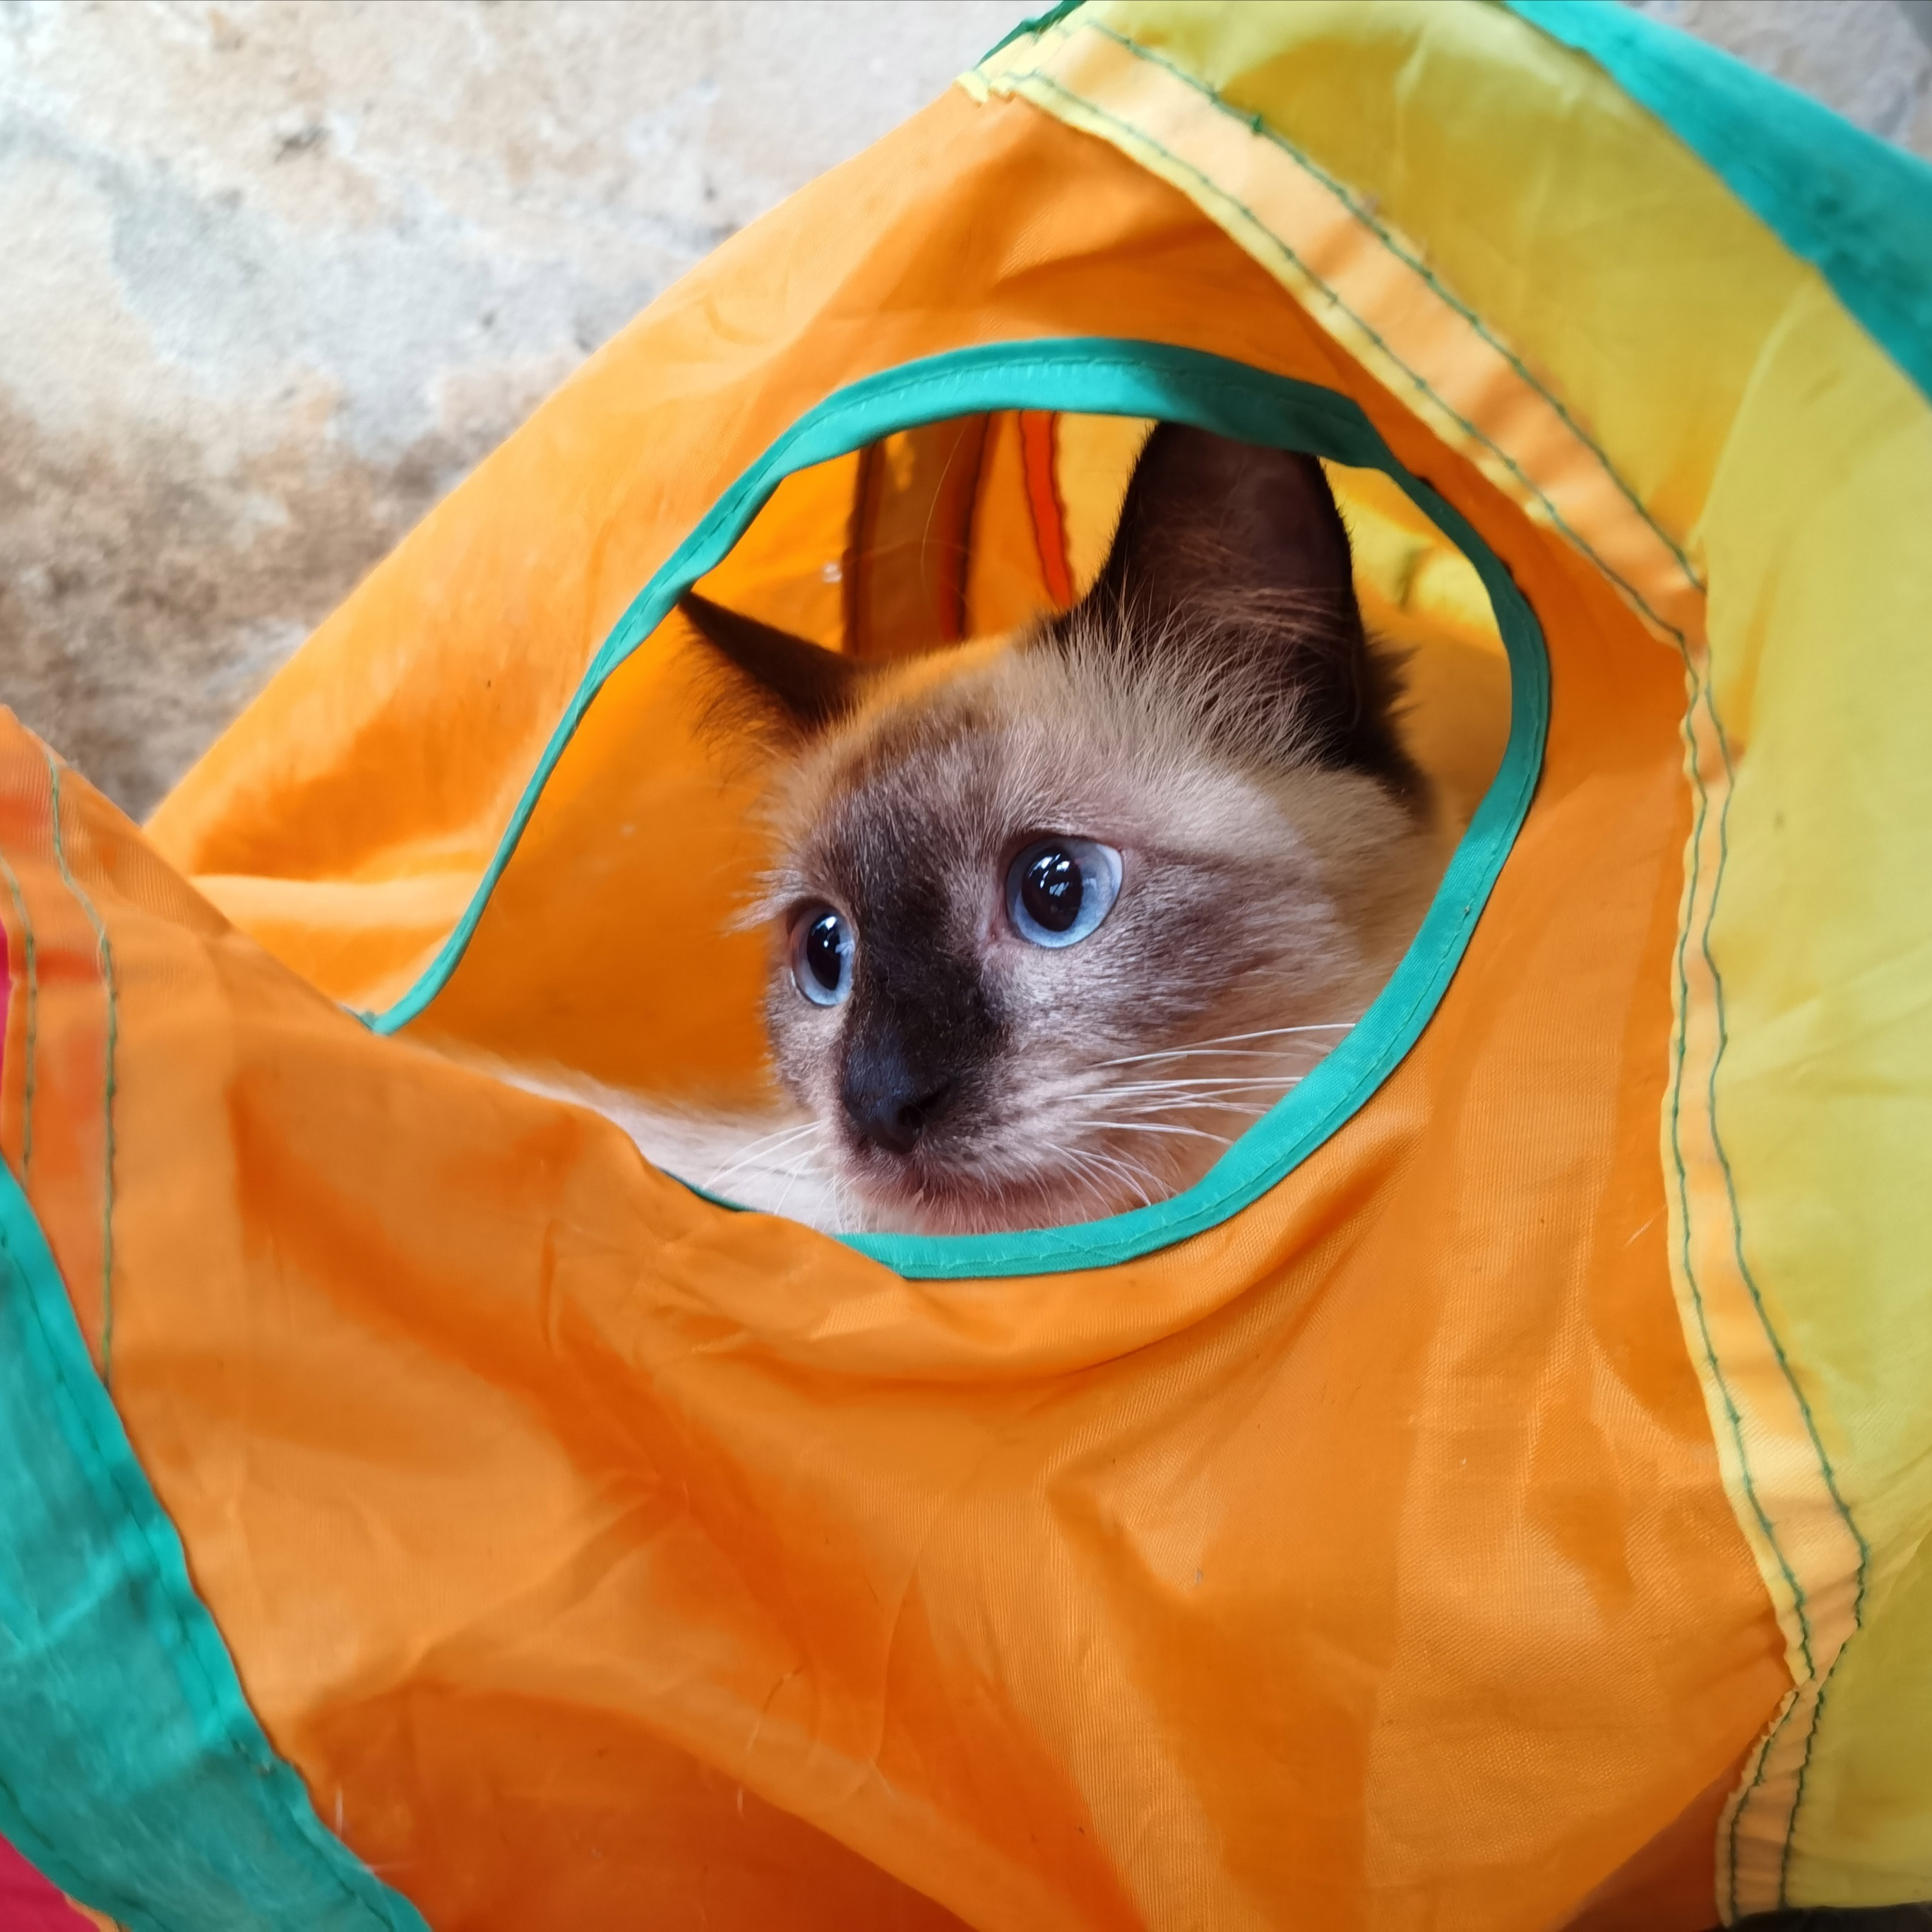 Tunel sprężyna długa zabawka dla kota FIGARO